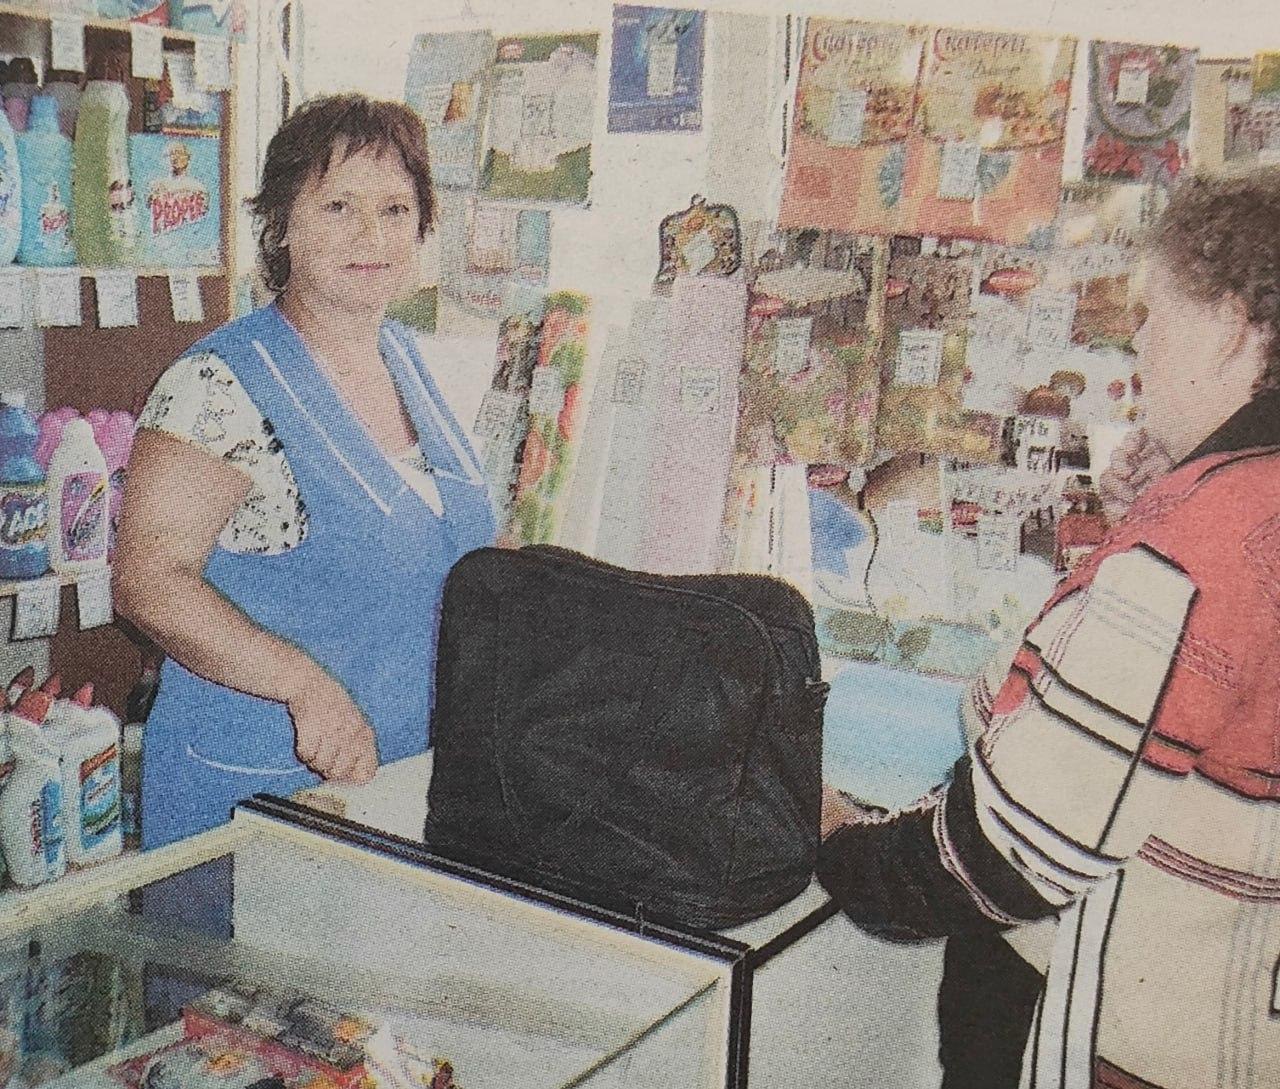 Местные работники торговли в подборке газетных публикаций Лотошинского архива